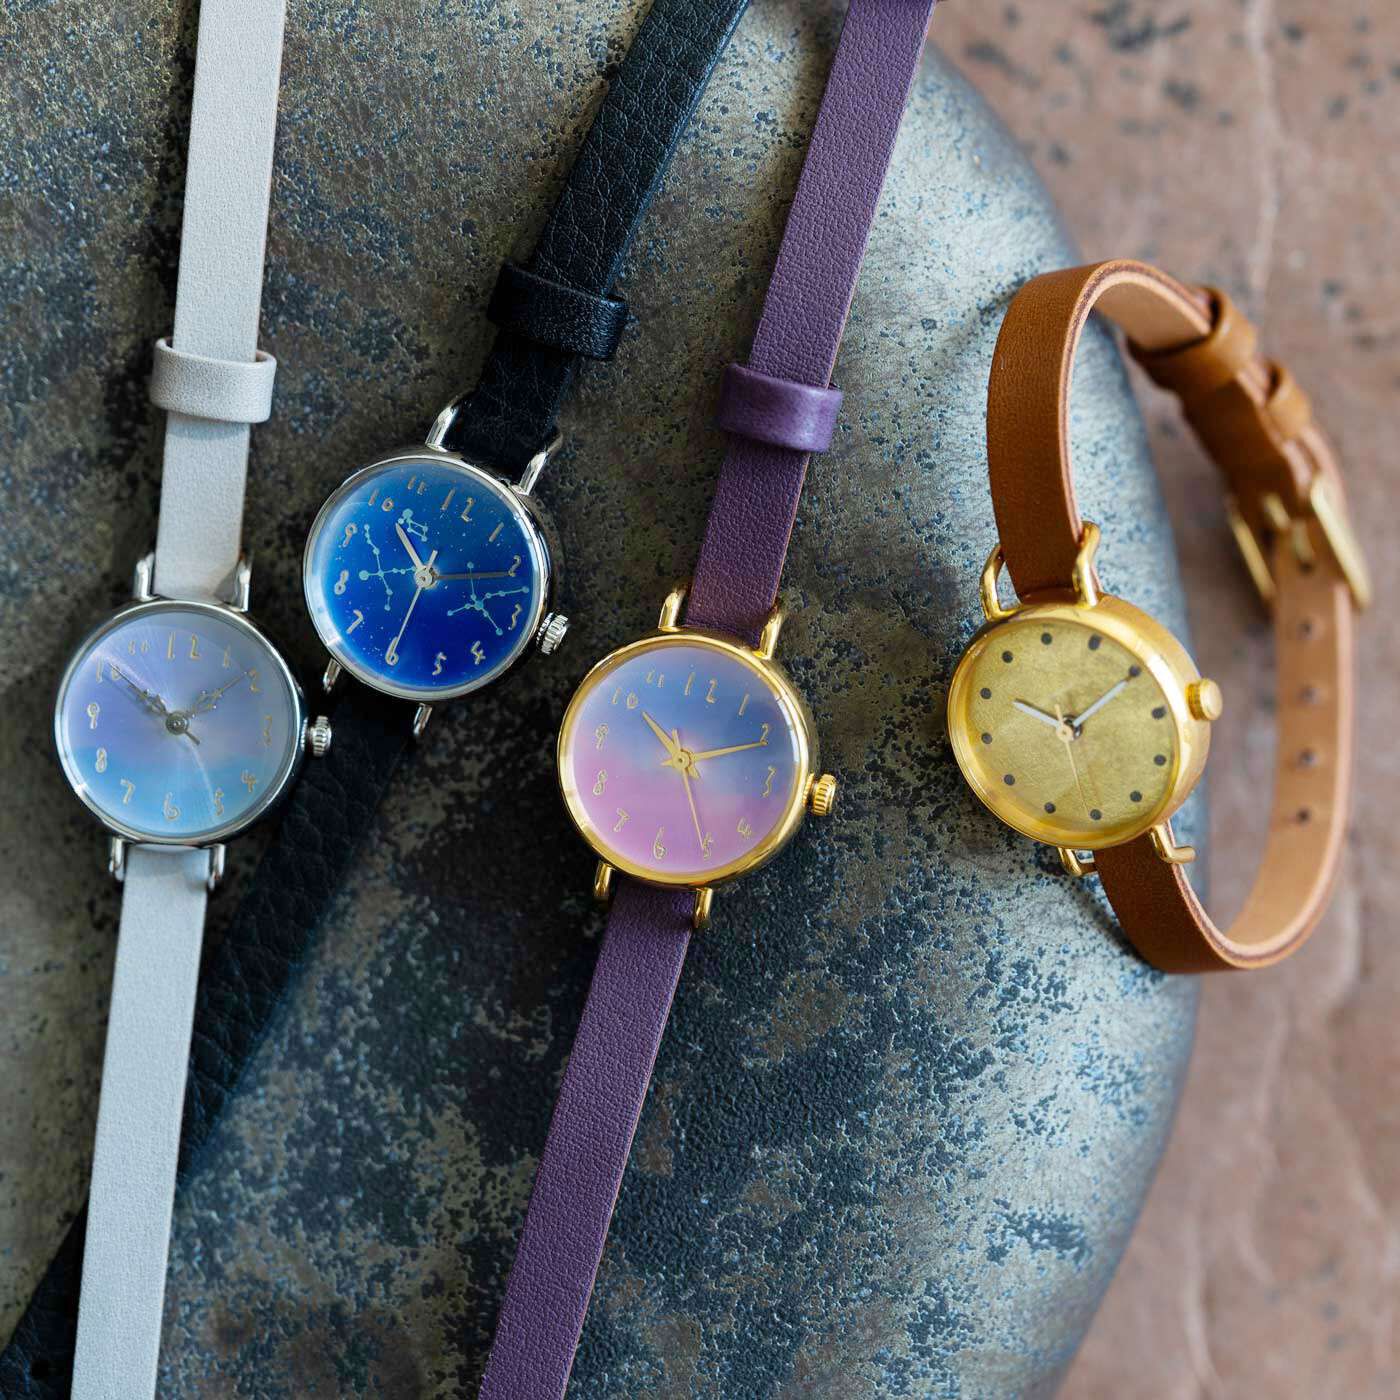 ＆Stories|金沢の時計職人が手掛けた　宵の空に見惚れる腕時計〈グレー〉|職人さんが一点ずつ丁寧に作る、人の手から生まれたあたたかみが感じられる時計です。